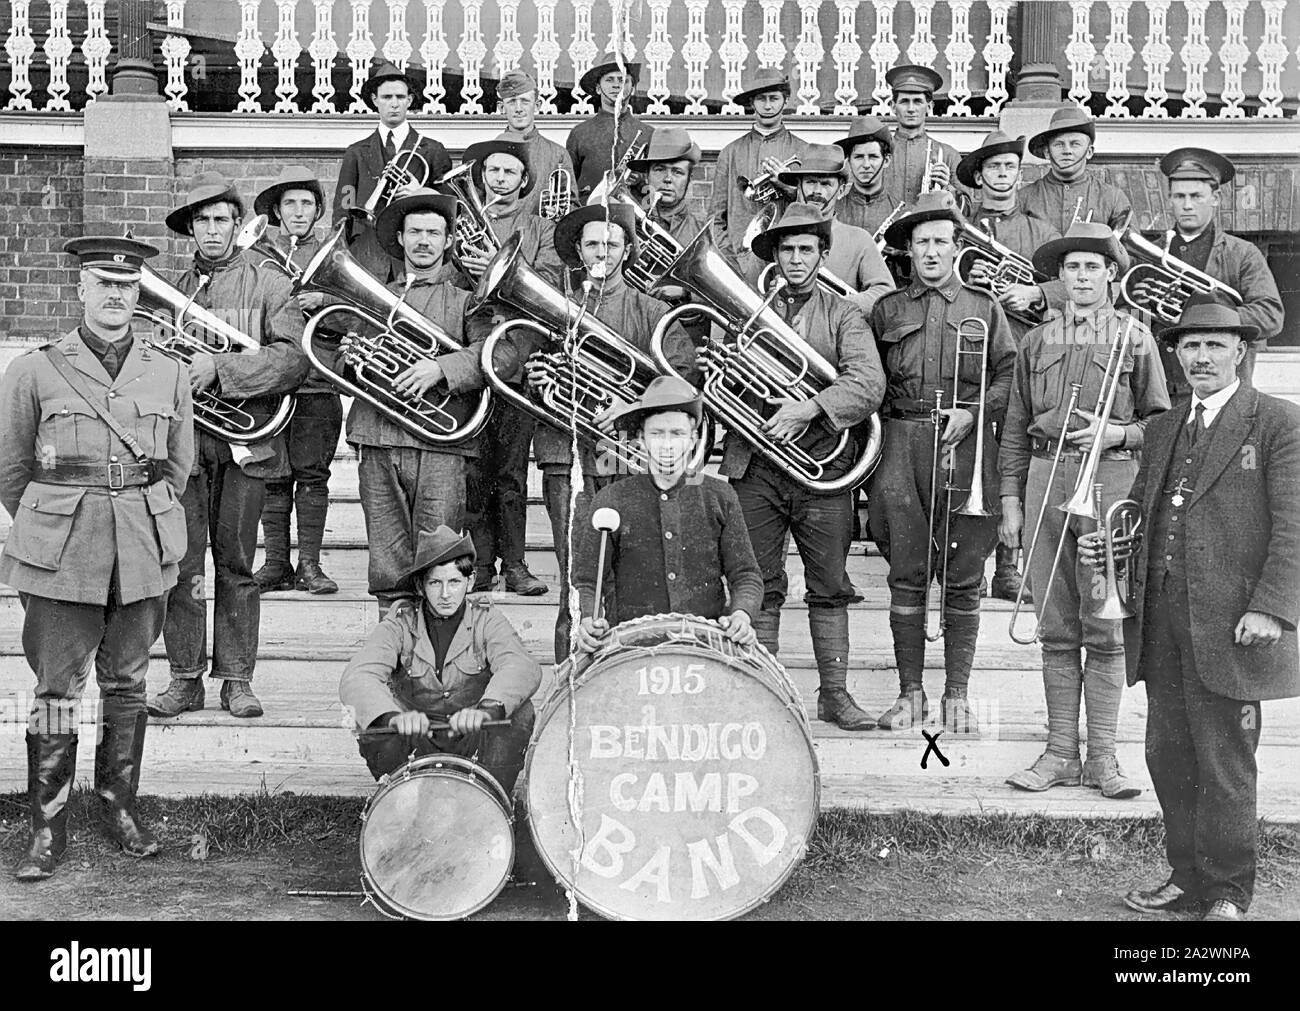 Negativo - Band di pre-arruolamento Training Camp, Bendigo, Victoria, la guerra mondiale I, 1915, Bandsmen di Bendigo camp band. Questo era un campo di addestramento che si terrà prima di arruolamento per la prima guerra mondiale Foto Stock